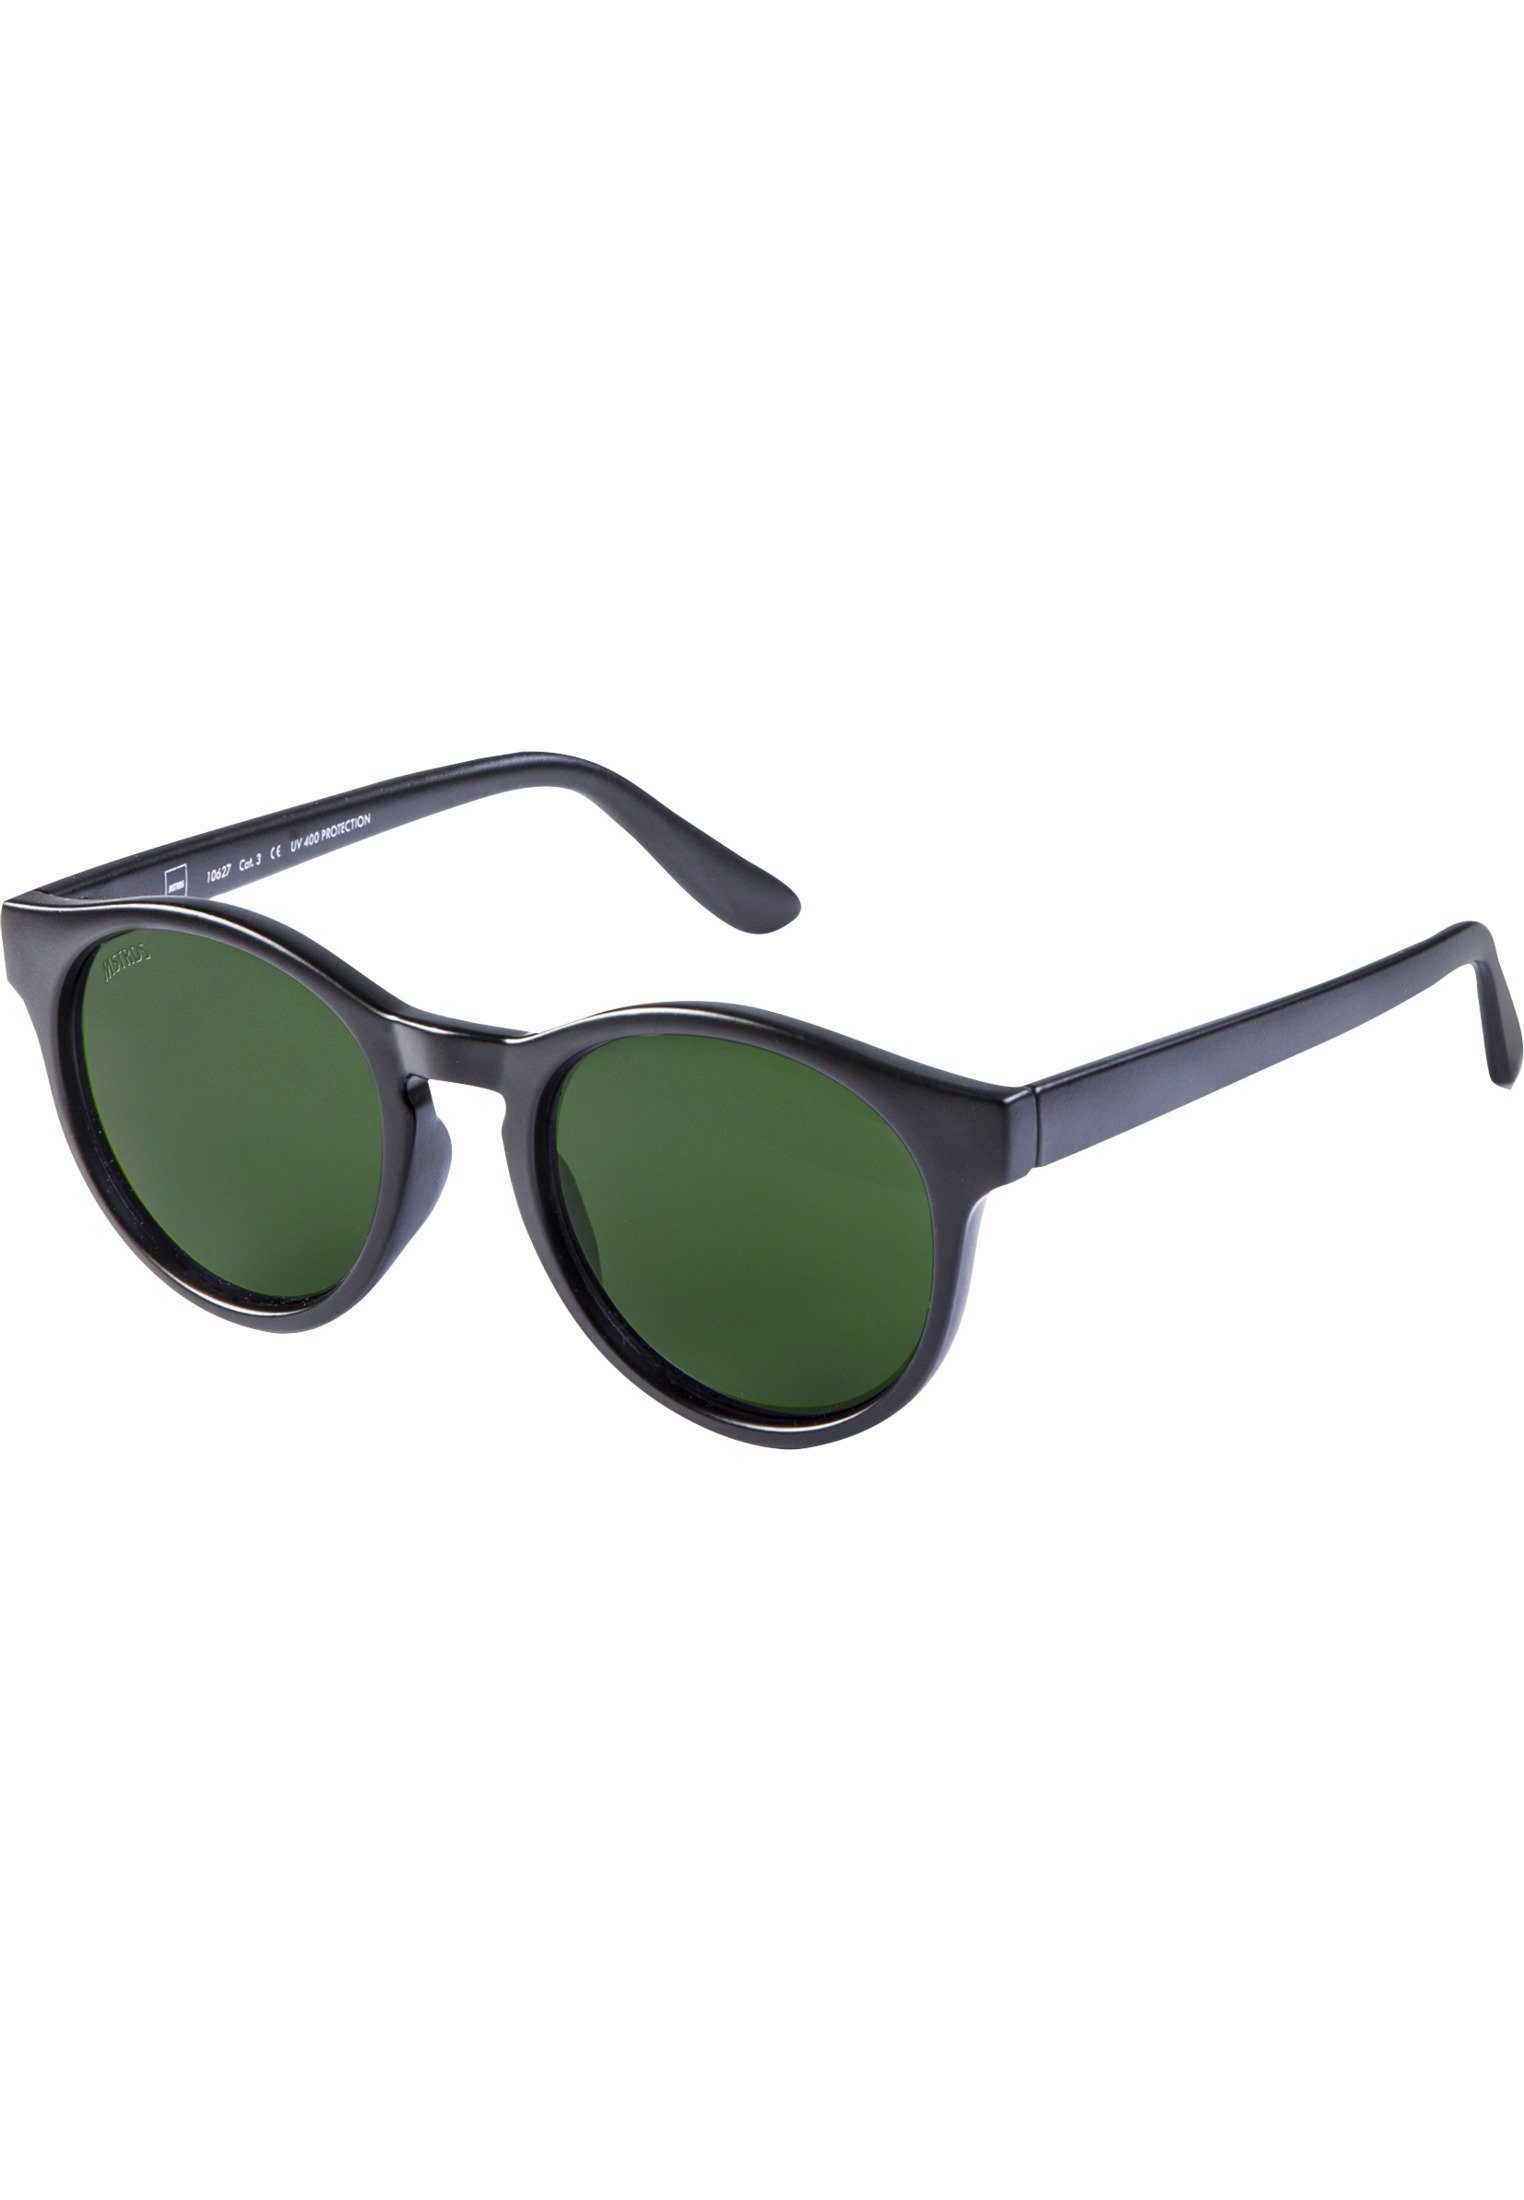 Accessoires Sonnenbrille Sunglasses Sunrise blk/grn MSTRDS